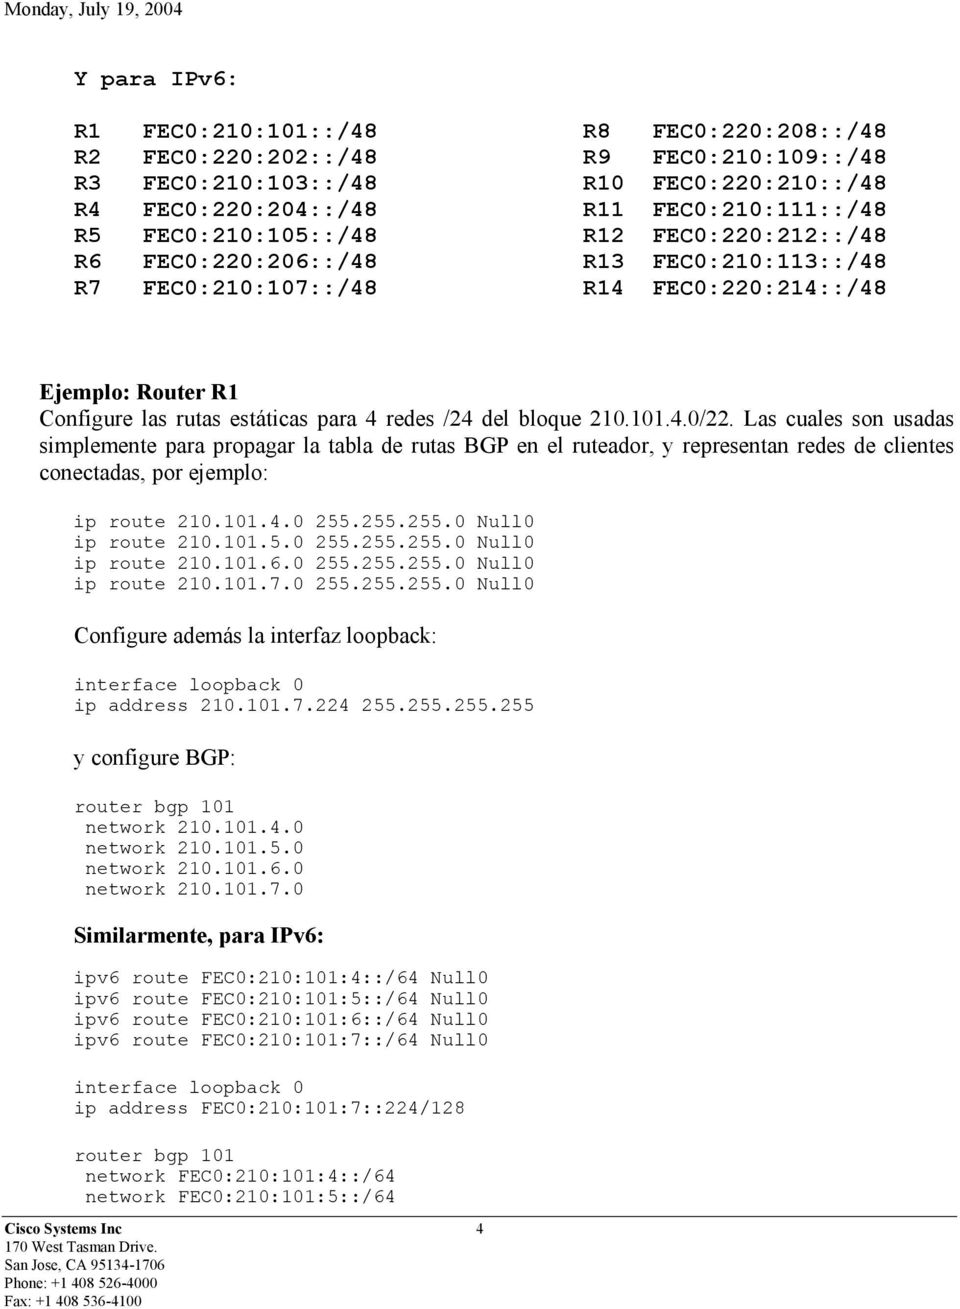 del bloque 210.101.4.0/22. Las cuales son usadas simplemente para propagar la tabla de rutas BGP en el ruteador, y representan redes de clientes conectadas, por ejemplo: ip route 210.101.4.0 255.